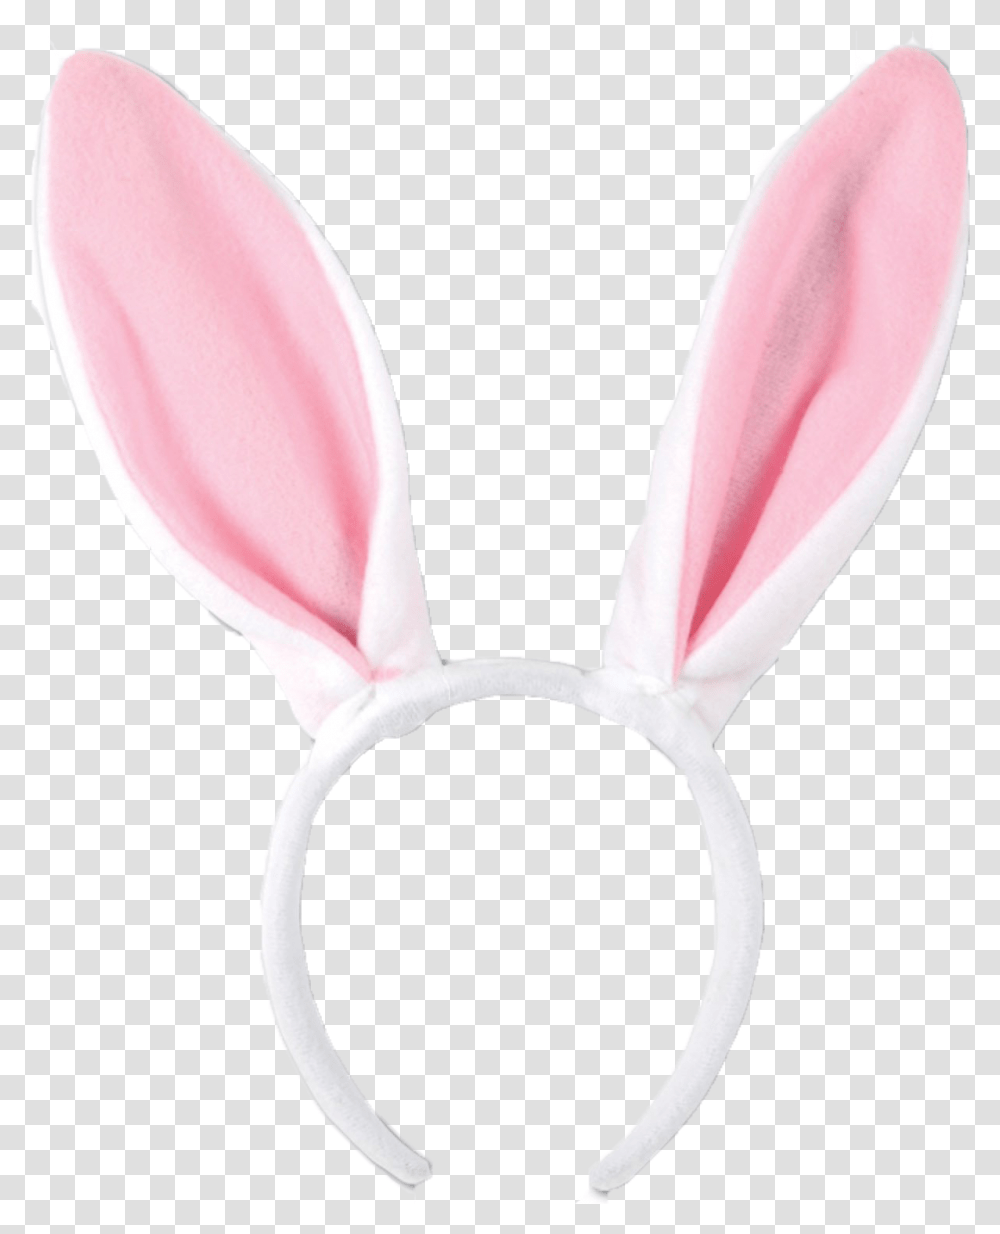 Bunny Ears Background Background Bunny Ears, Home Decor, Petal, Flower, Plant Transparent Png